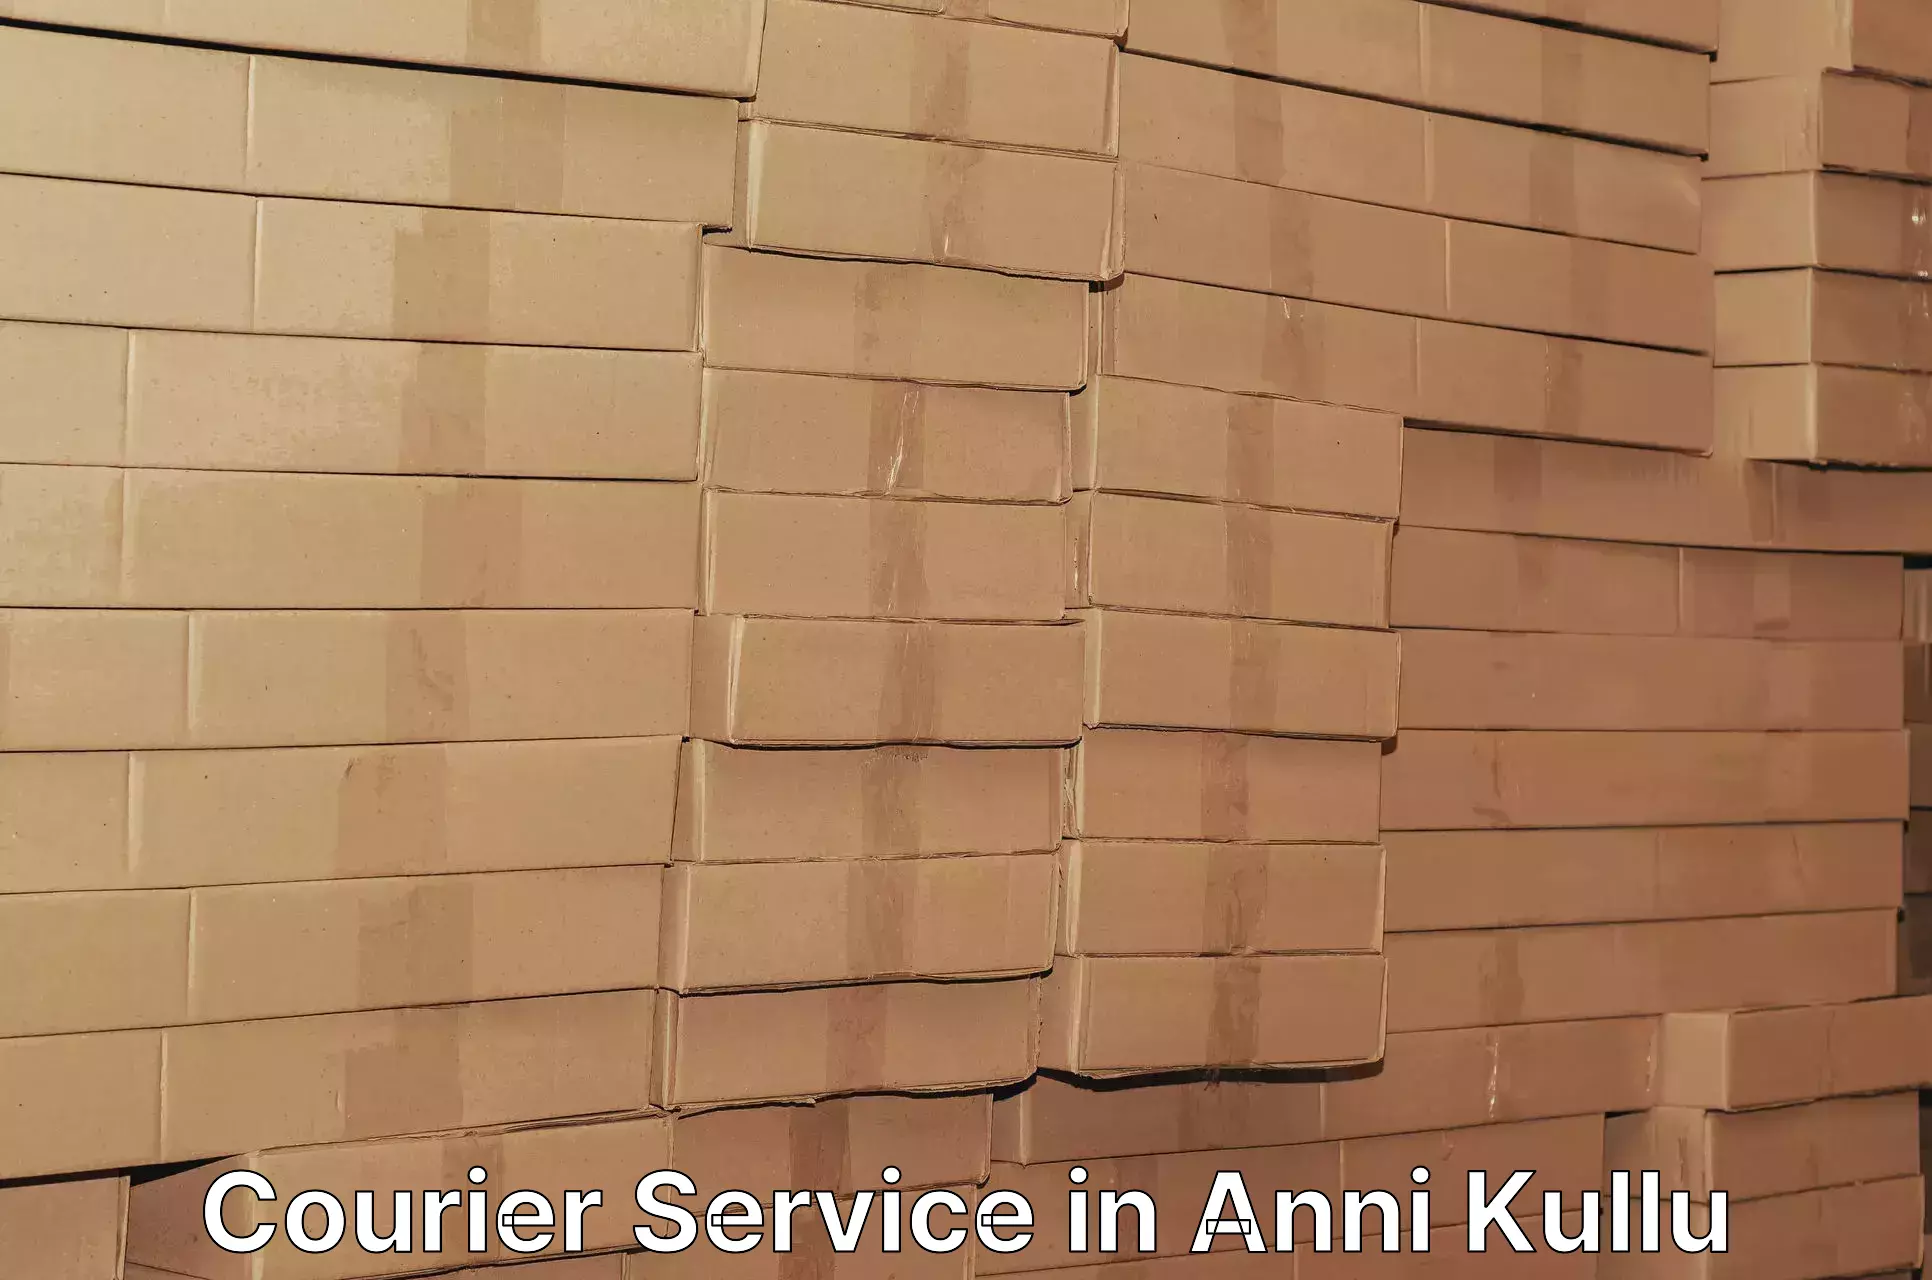 High-speed parcel service in Anni Kullu